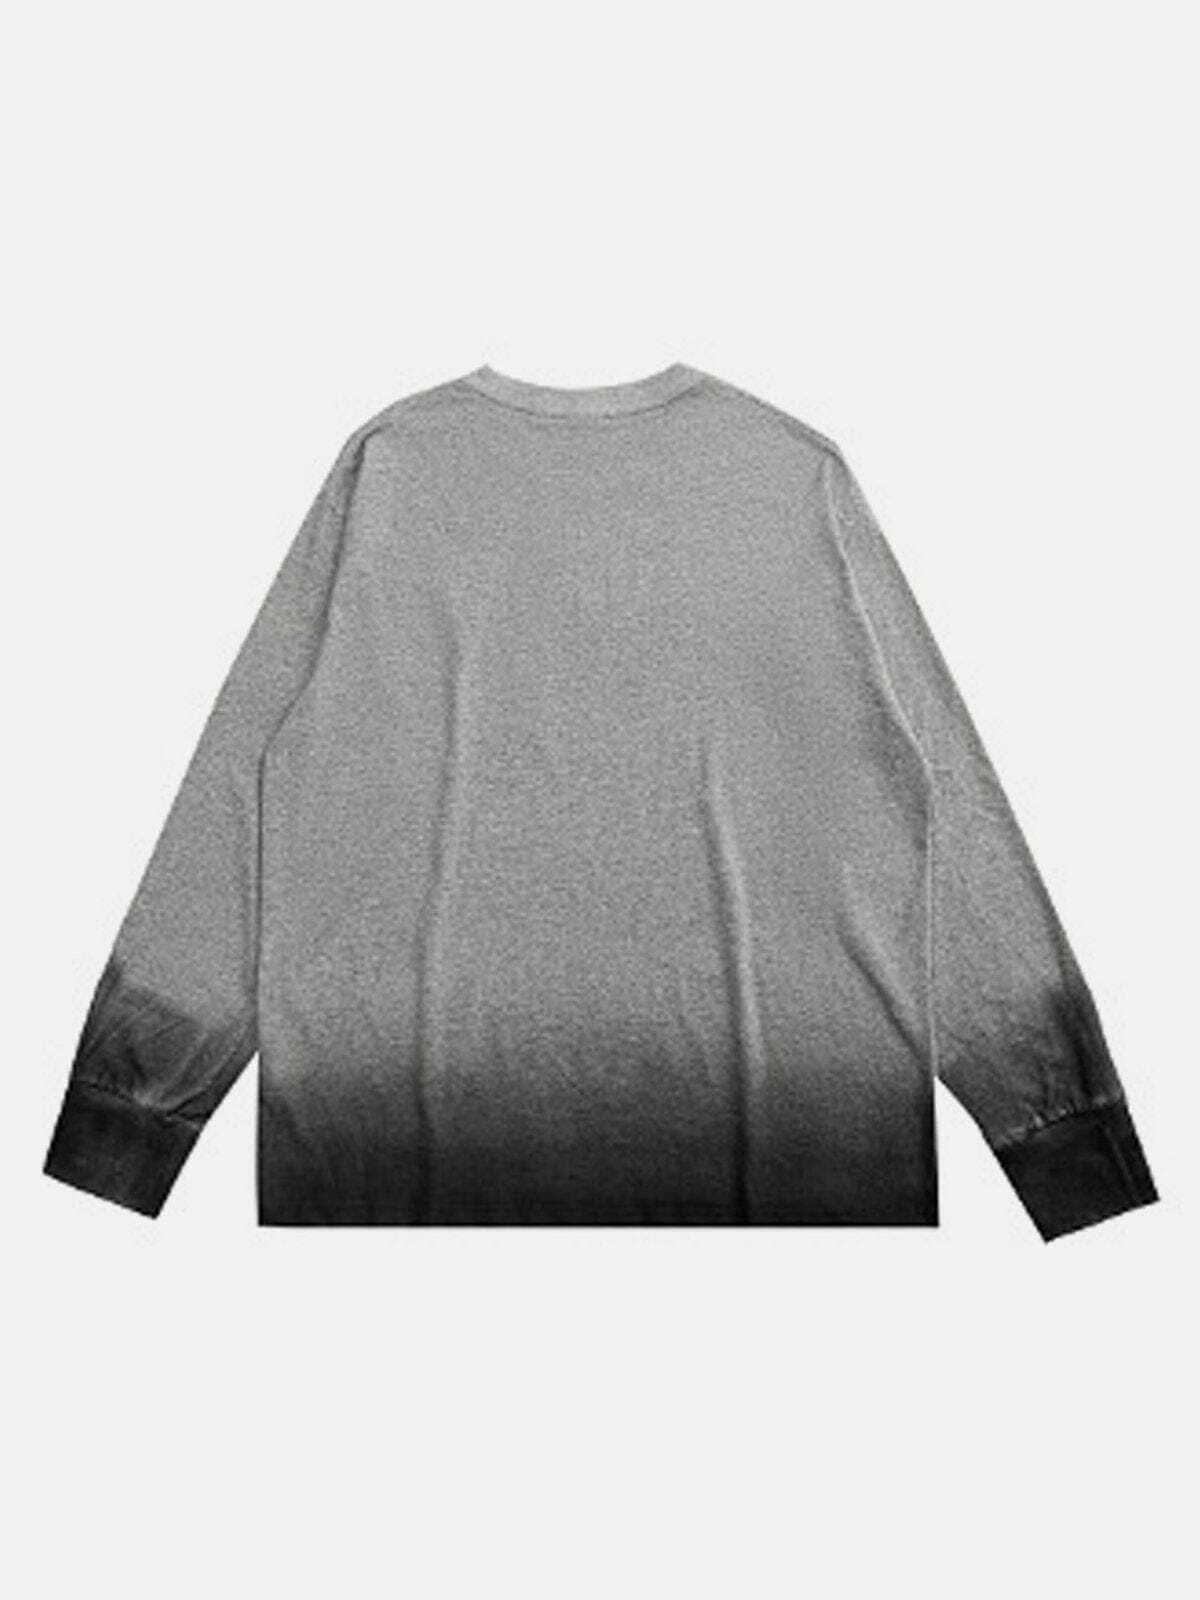 blooming gradient sweatshirt edgy streetwear essential 6198